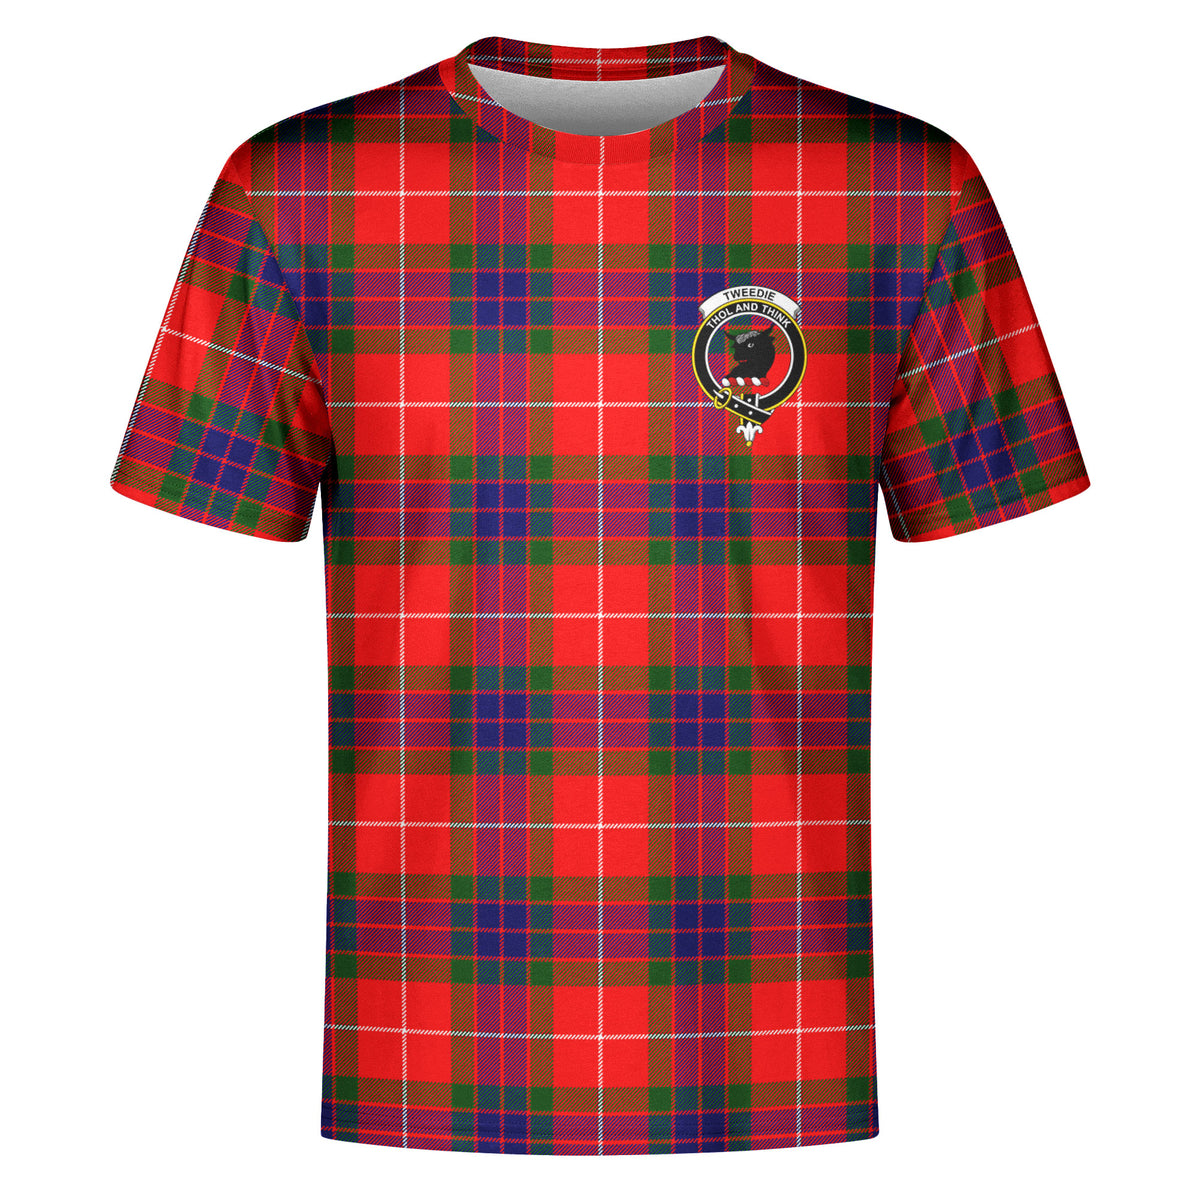 Tweedie Tartan Crest T-shirt